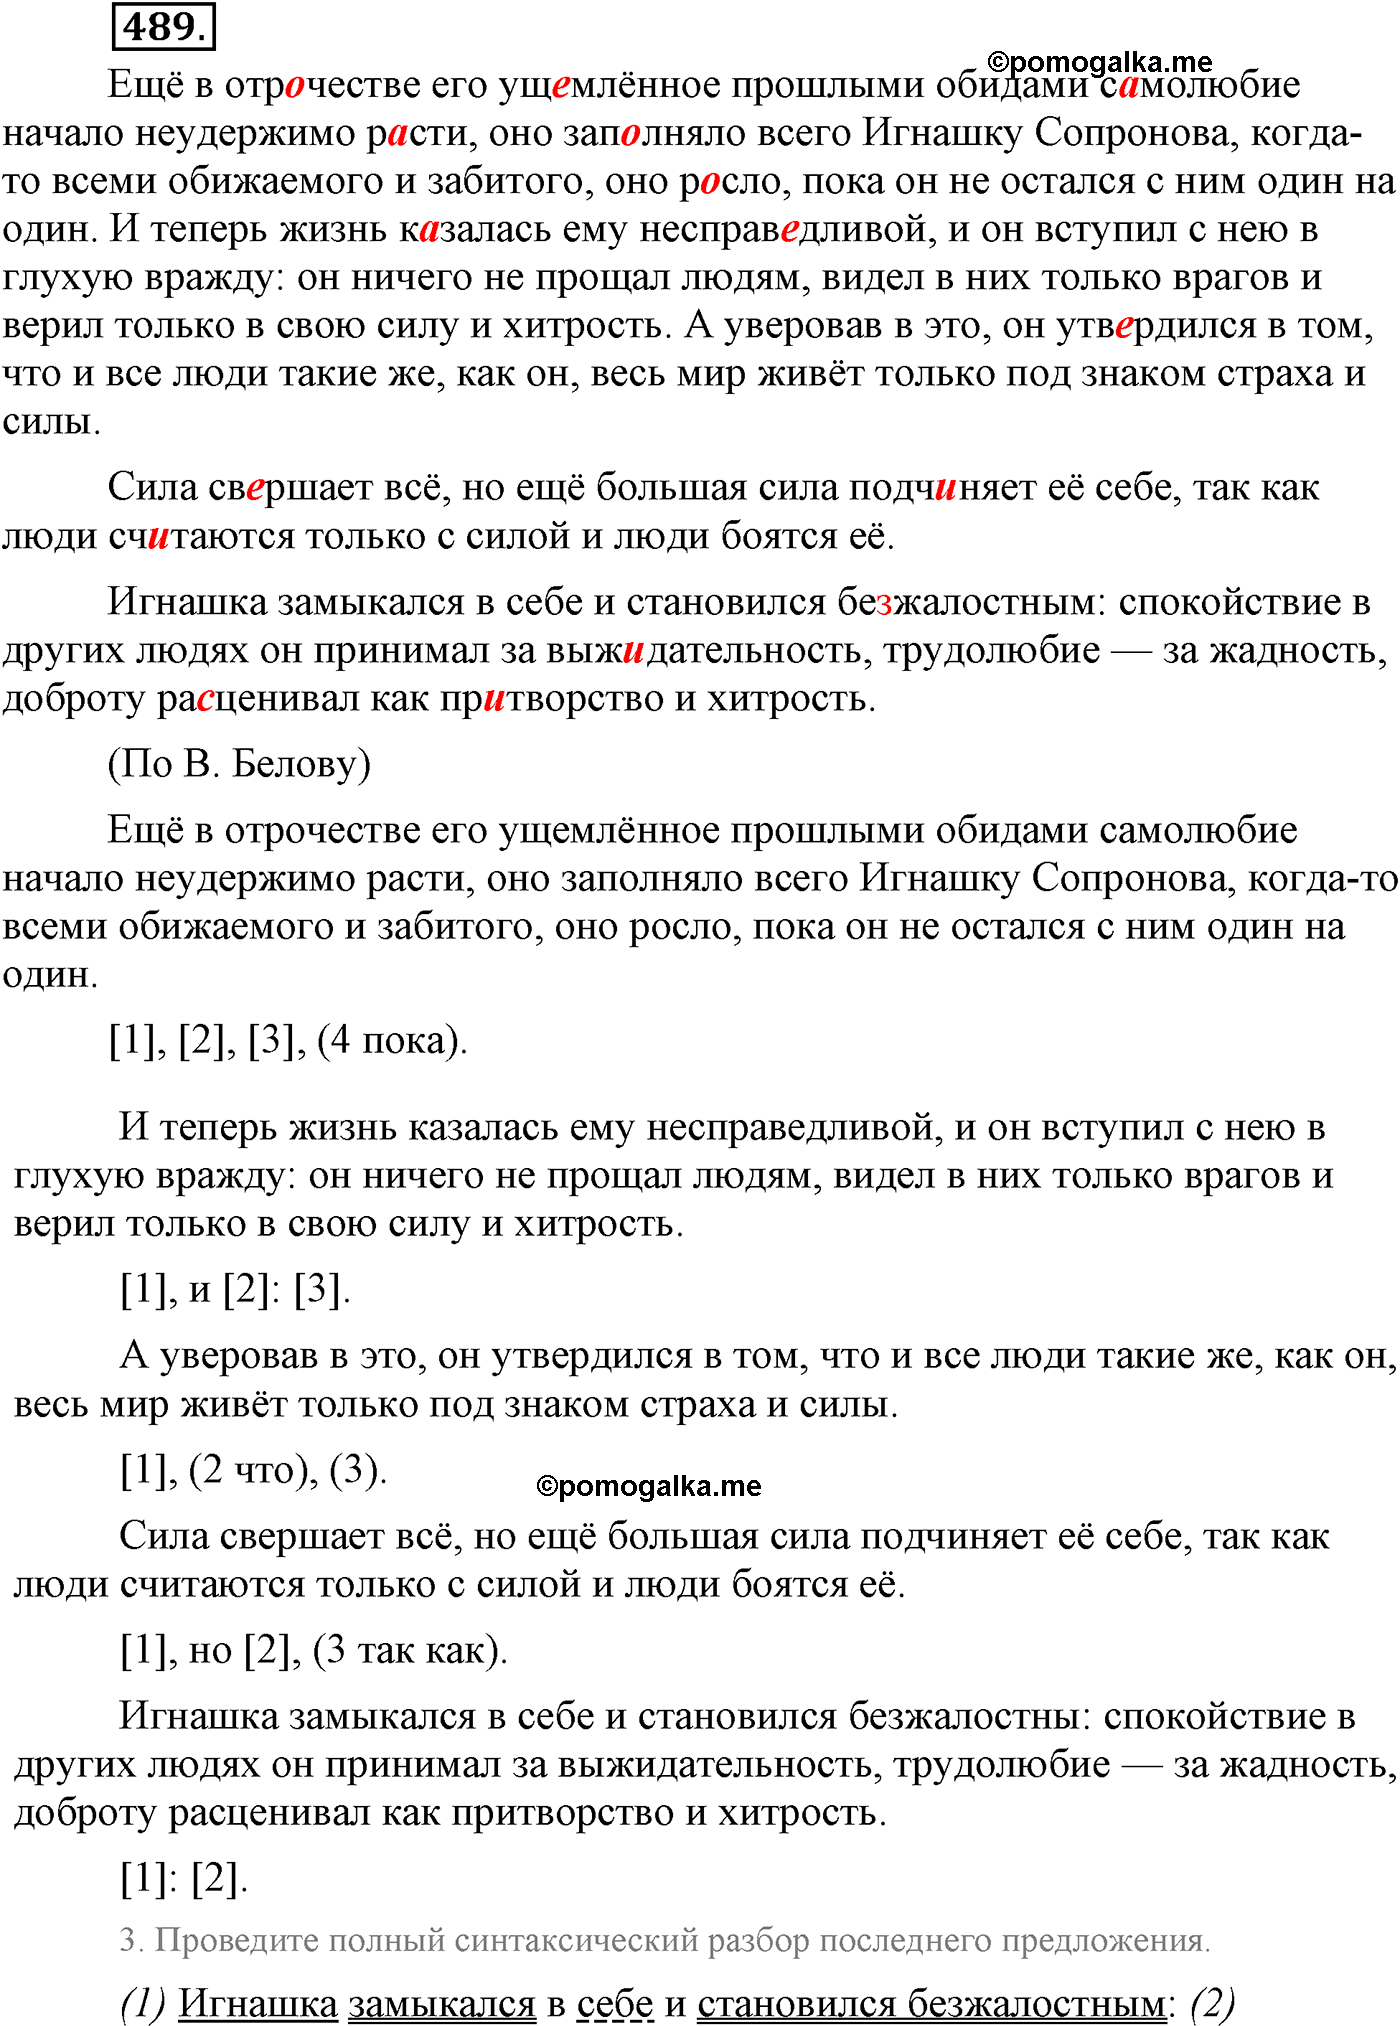 упражнение №489 русский язык 9 класс Львова